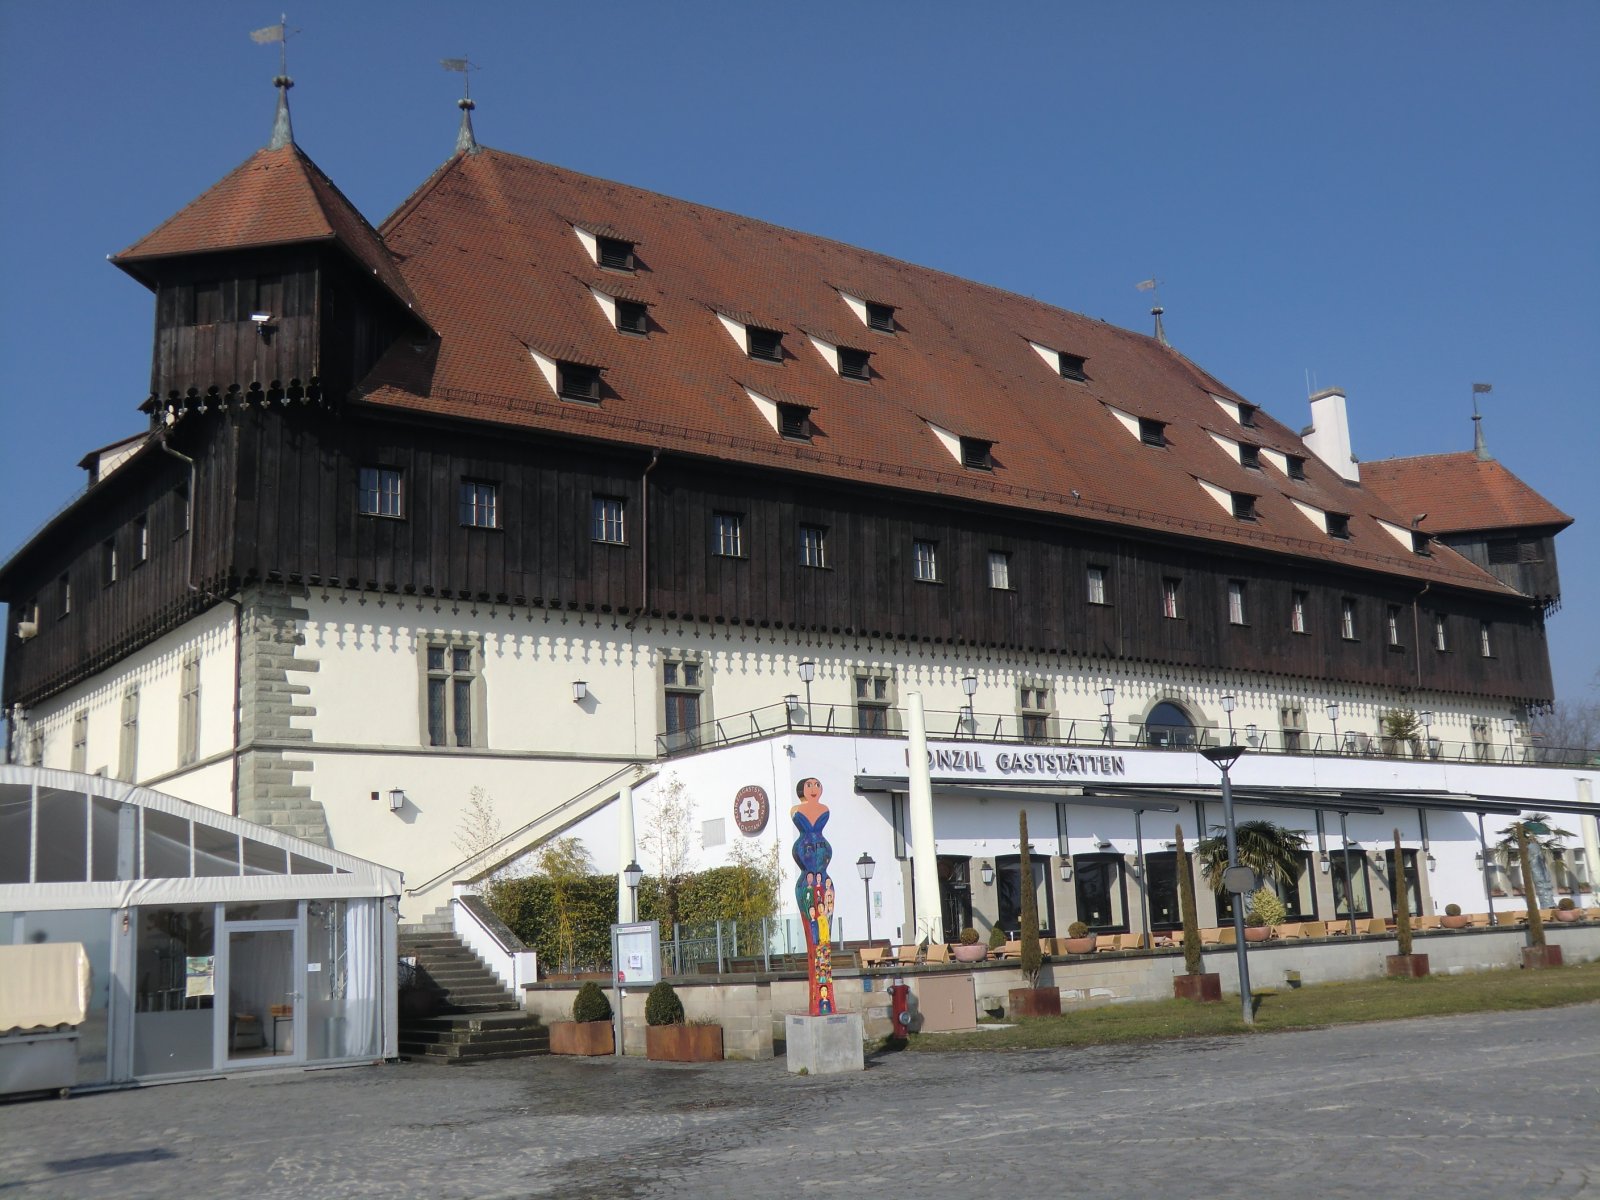 Konzilsgebäude in Konstanz, heute Messehalle